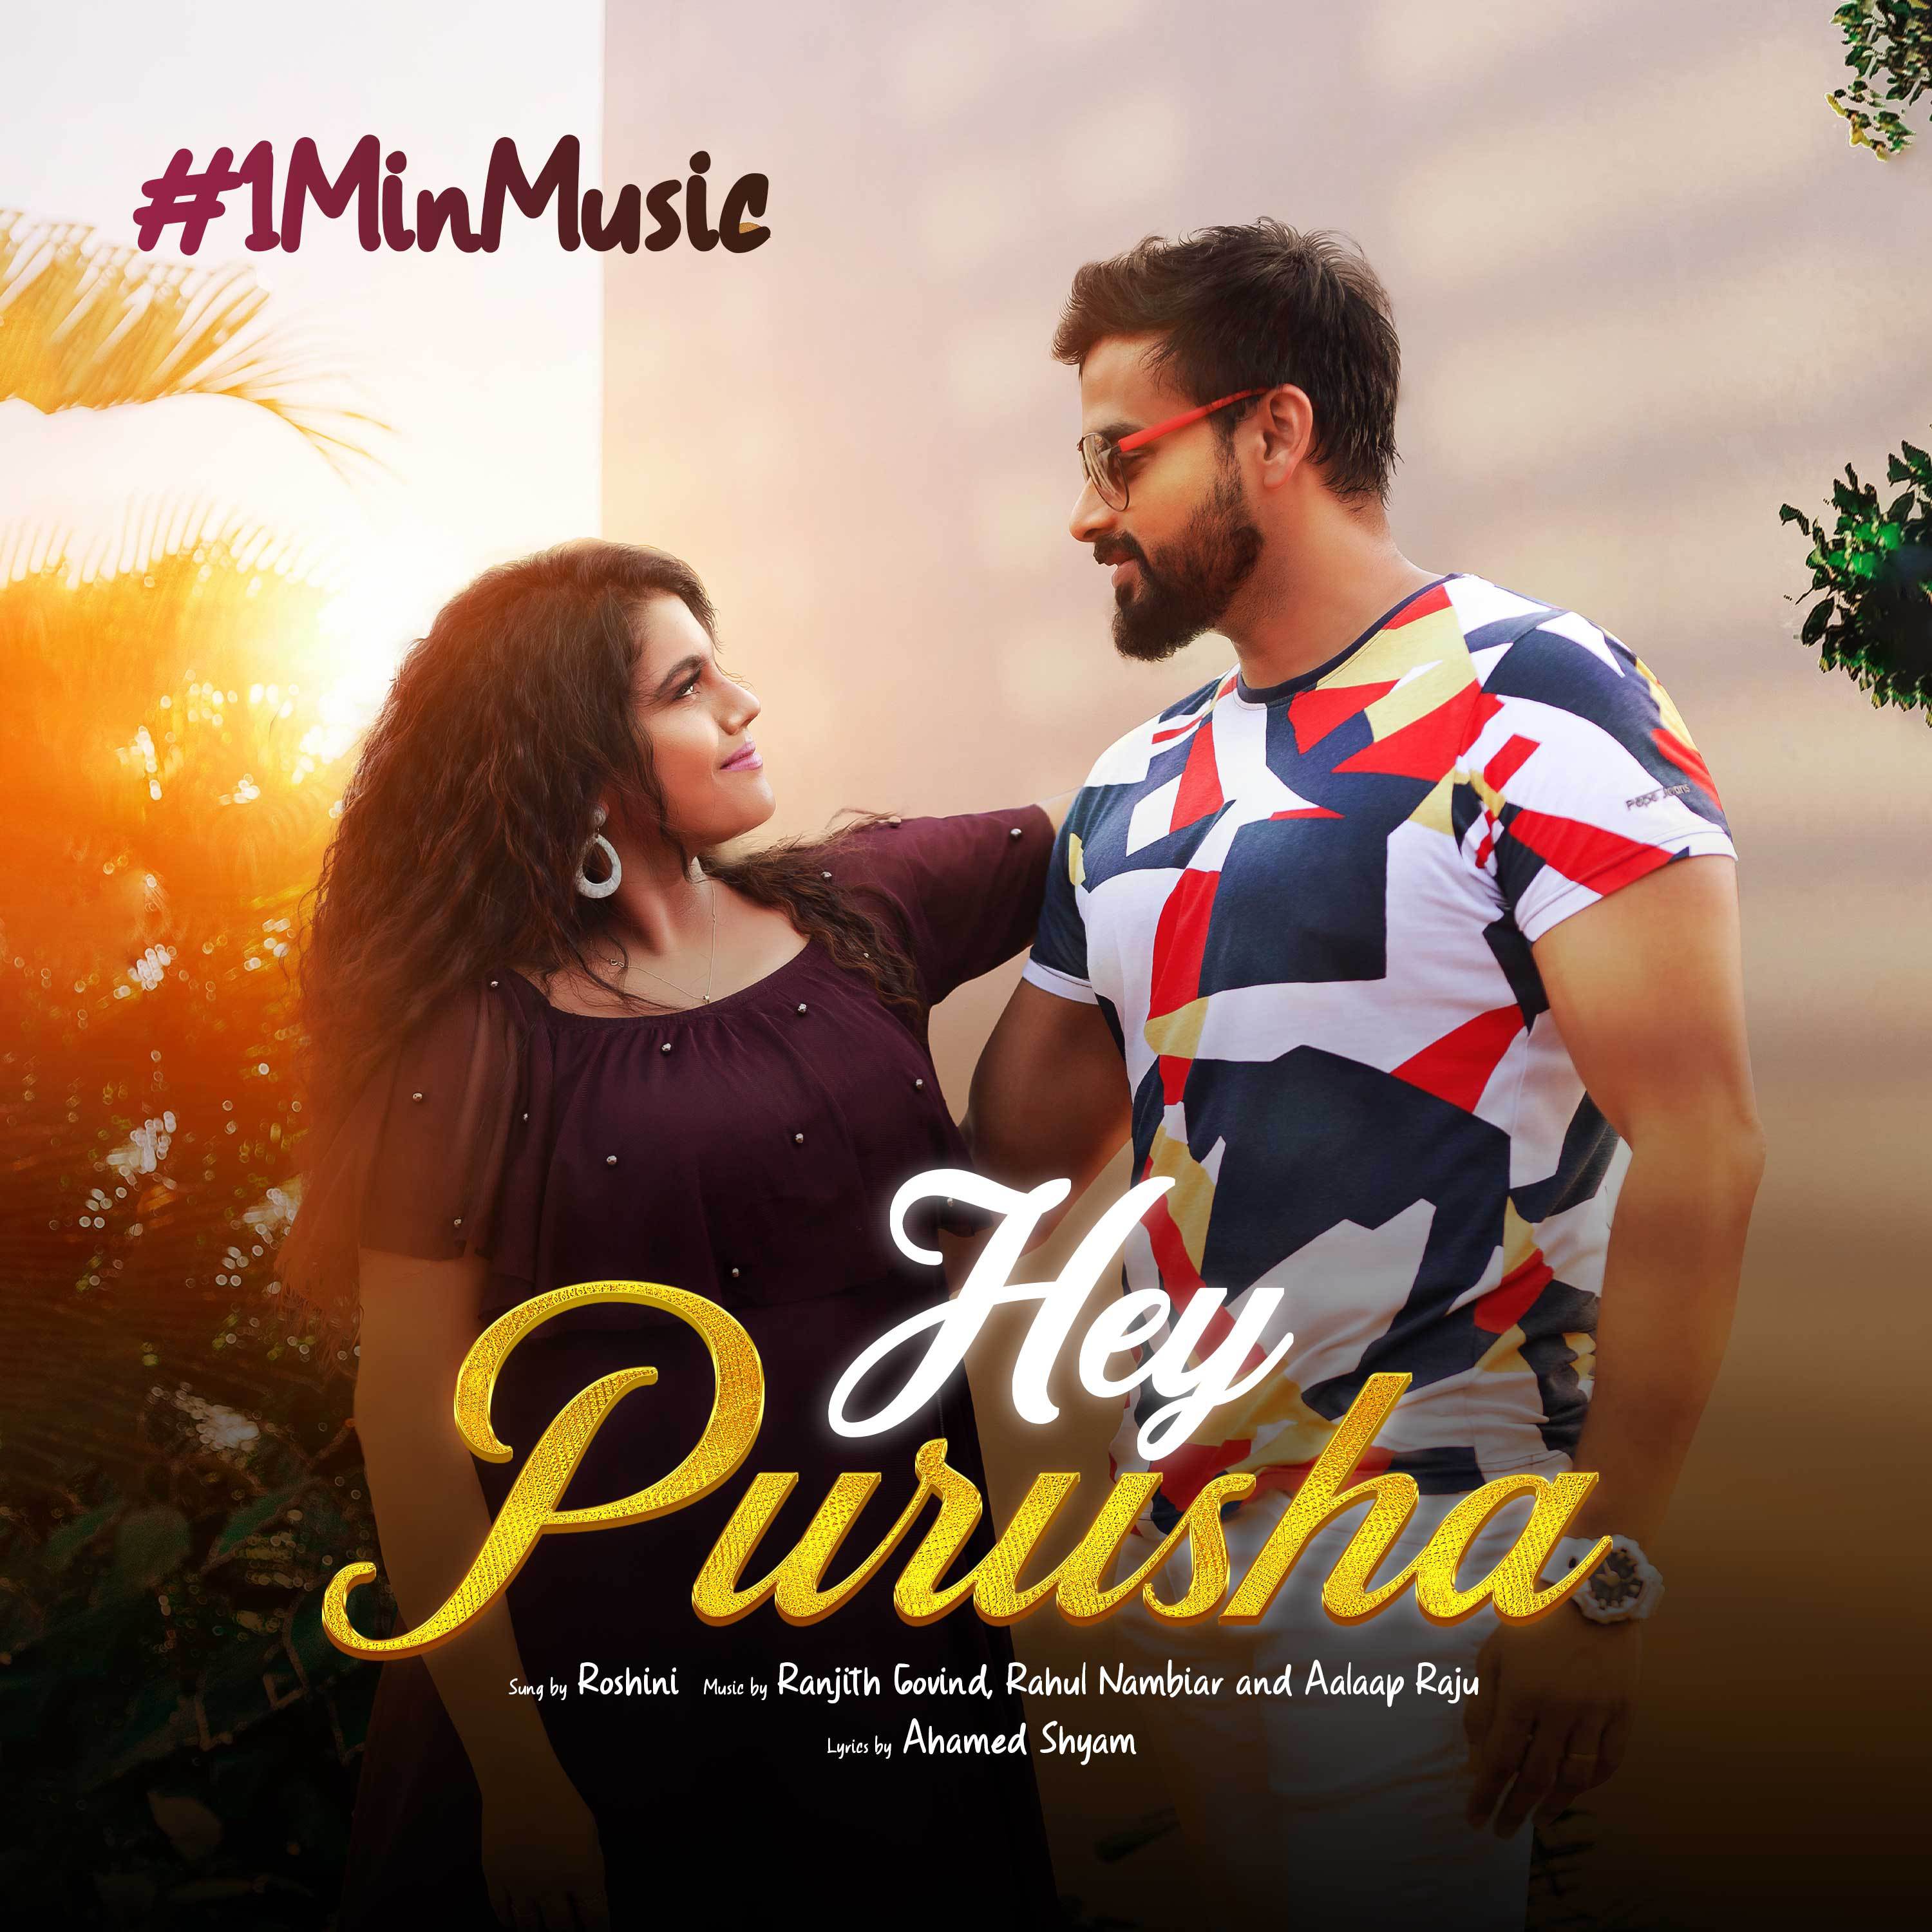 Roshini - Hey Purusha - 1 Min Music